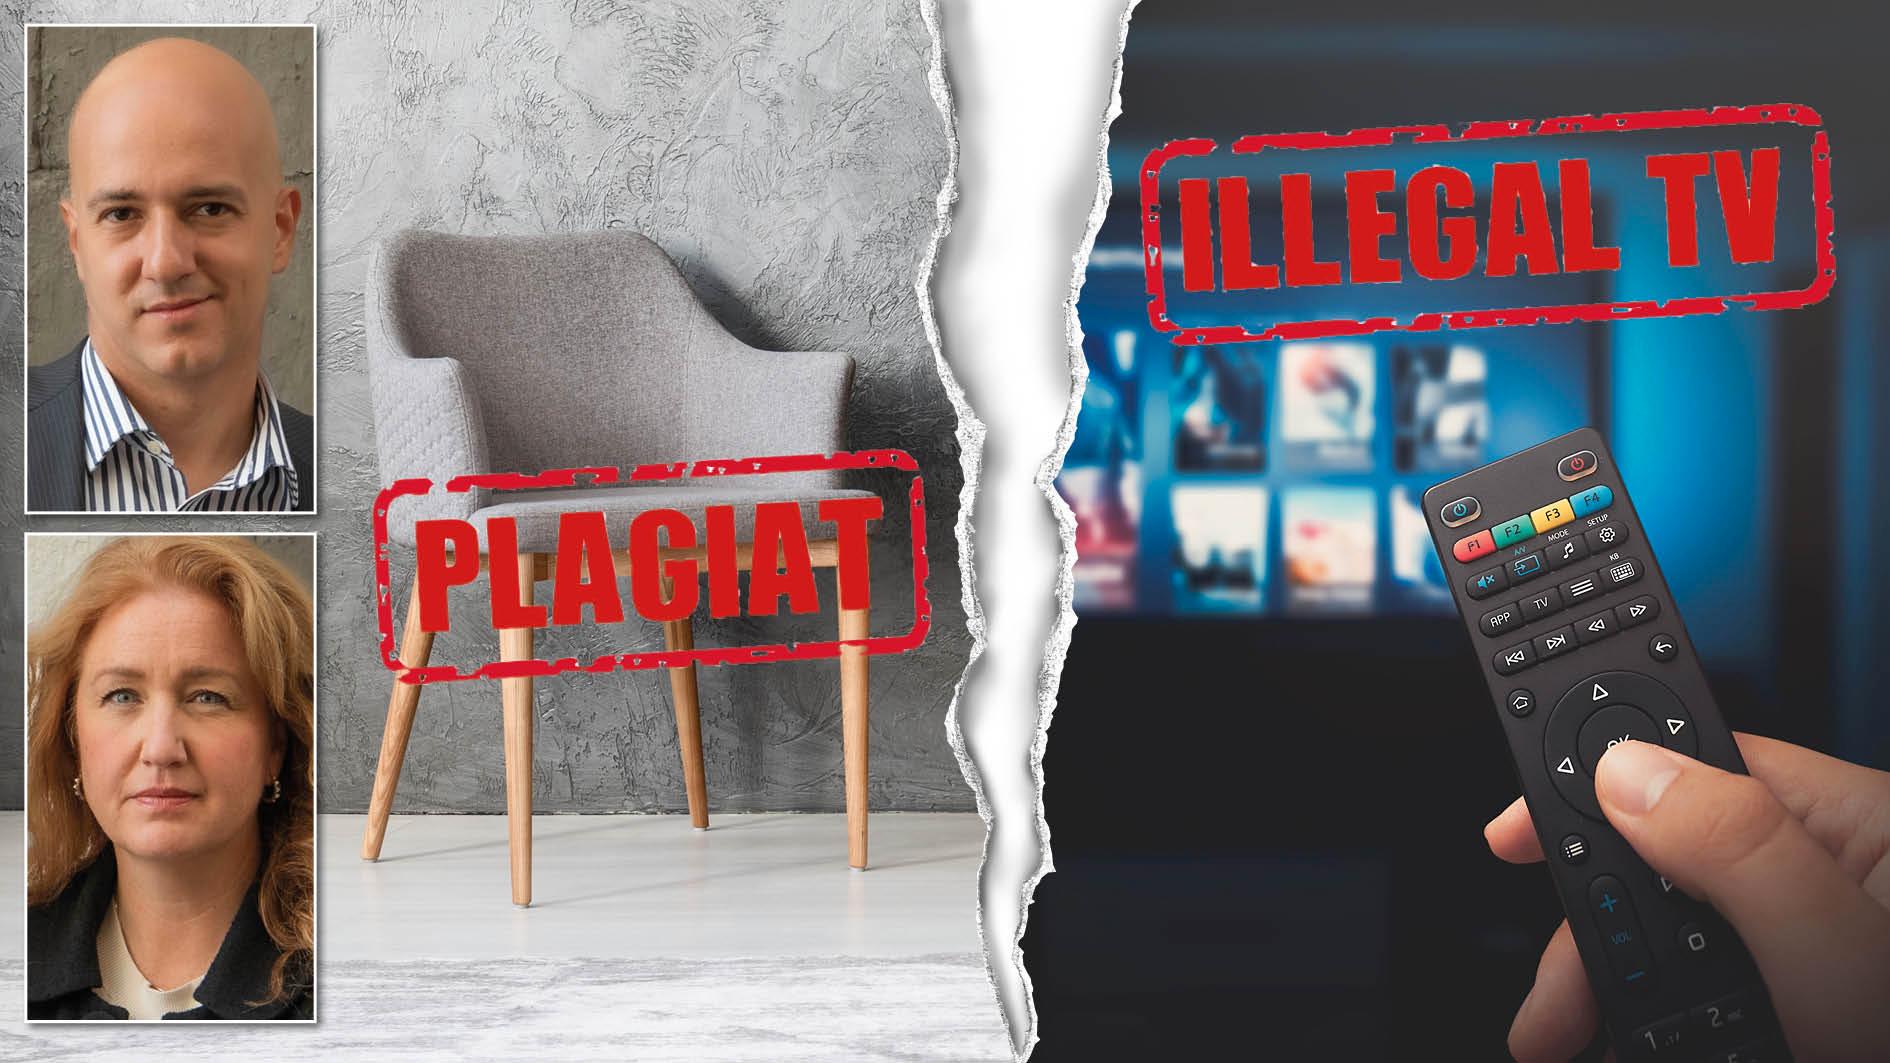 Sverige har inte tillräckligt skydd mot varumärkesförfalskning och piratkopiering som illegal IPTV. Detta får till följd att vi går miste om nästan 24 miljarder kronor i skatteintäkter. Och ungefär 77 600 laglydiga jobb trängs undan, skriver Nima Sanandaji och Sara Lindbäck.